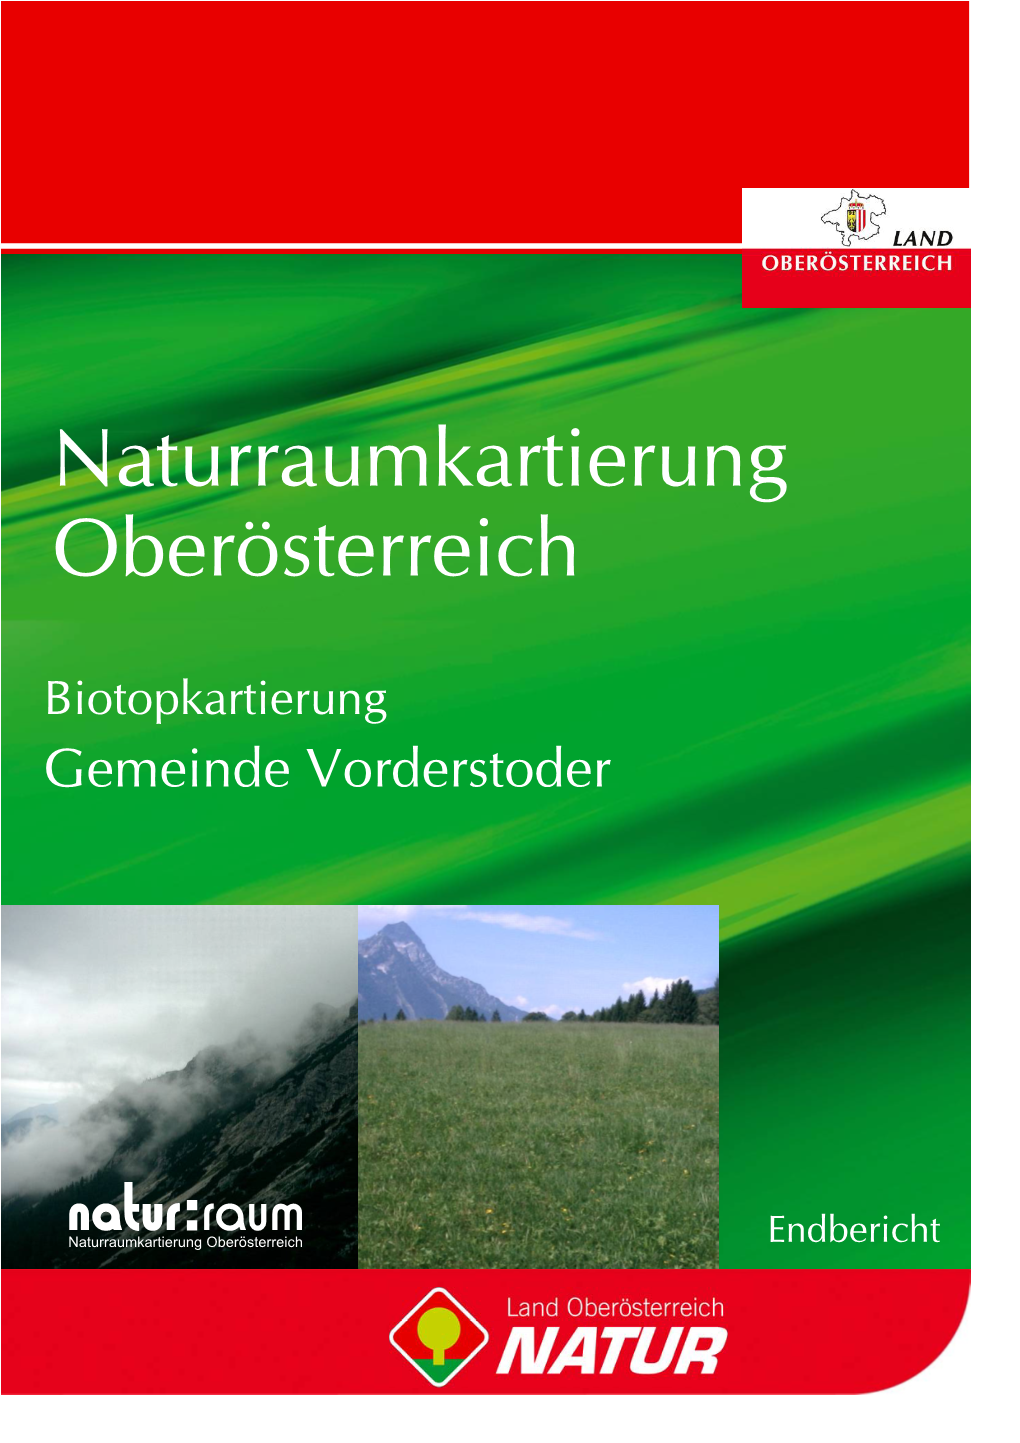 Biotopkartierung Gemeinde Vorderstoder